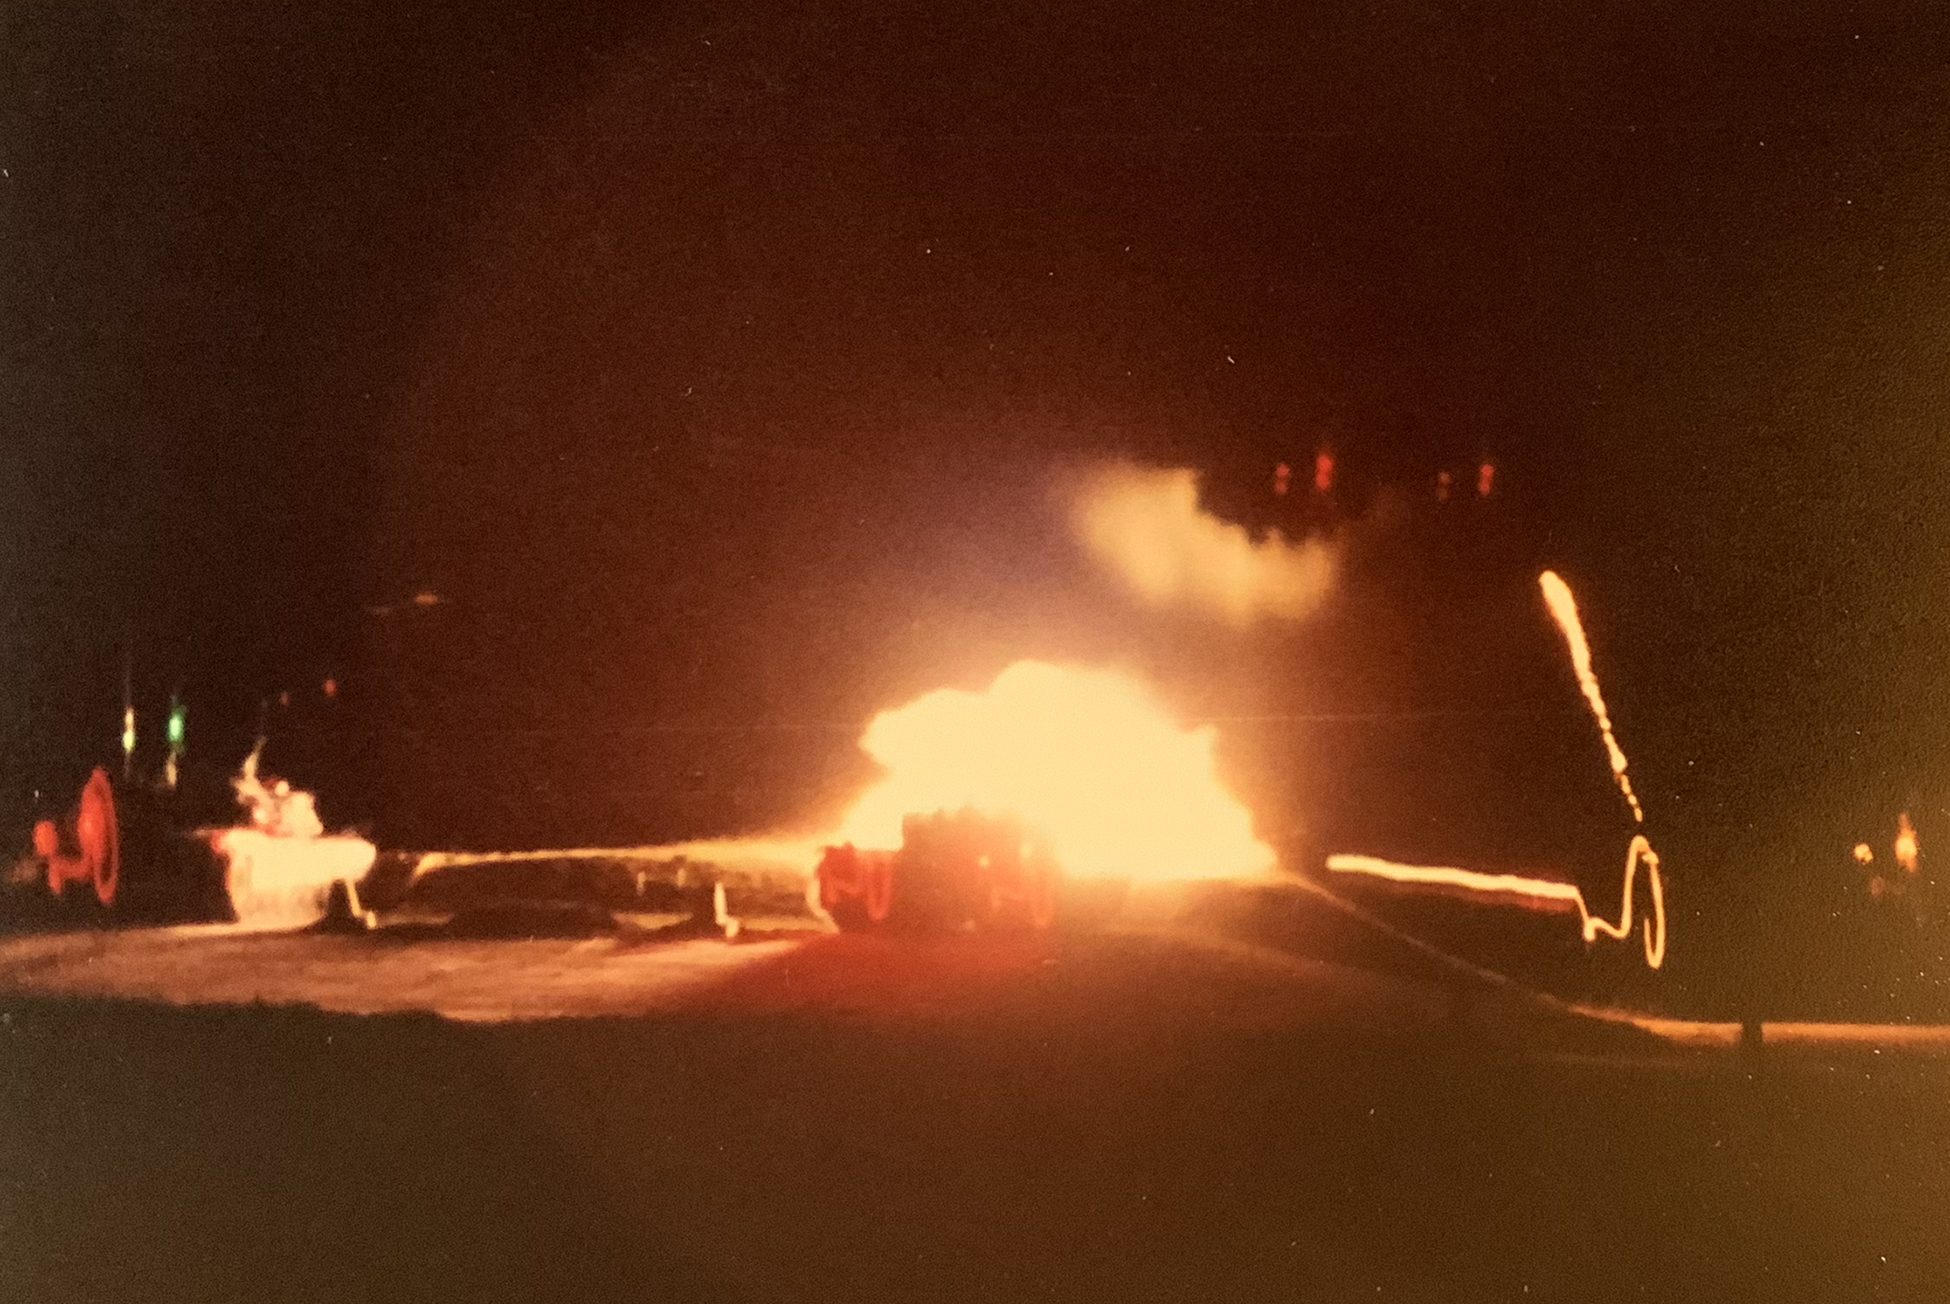 M1 tank night fire, May 1988